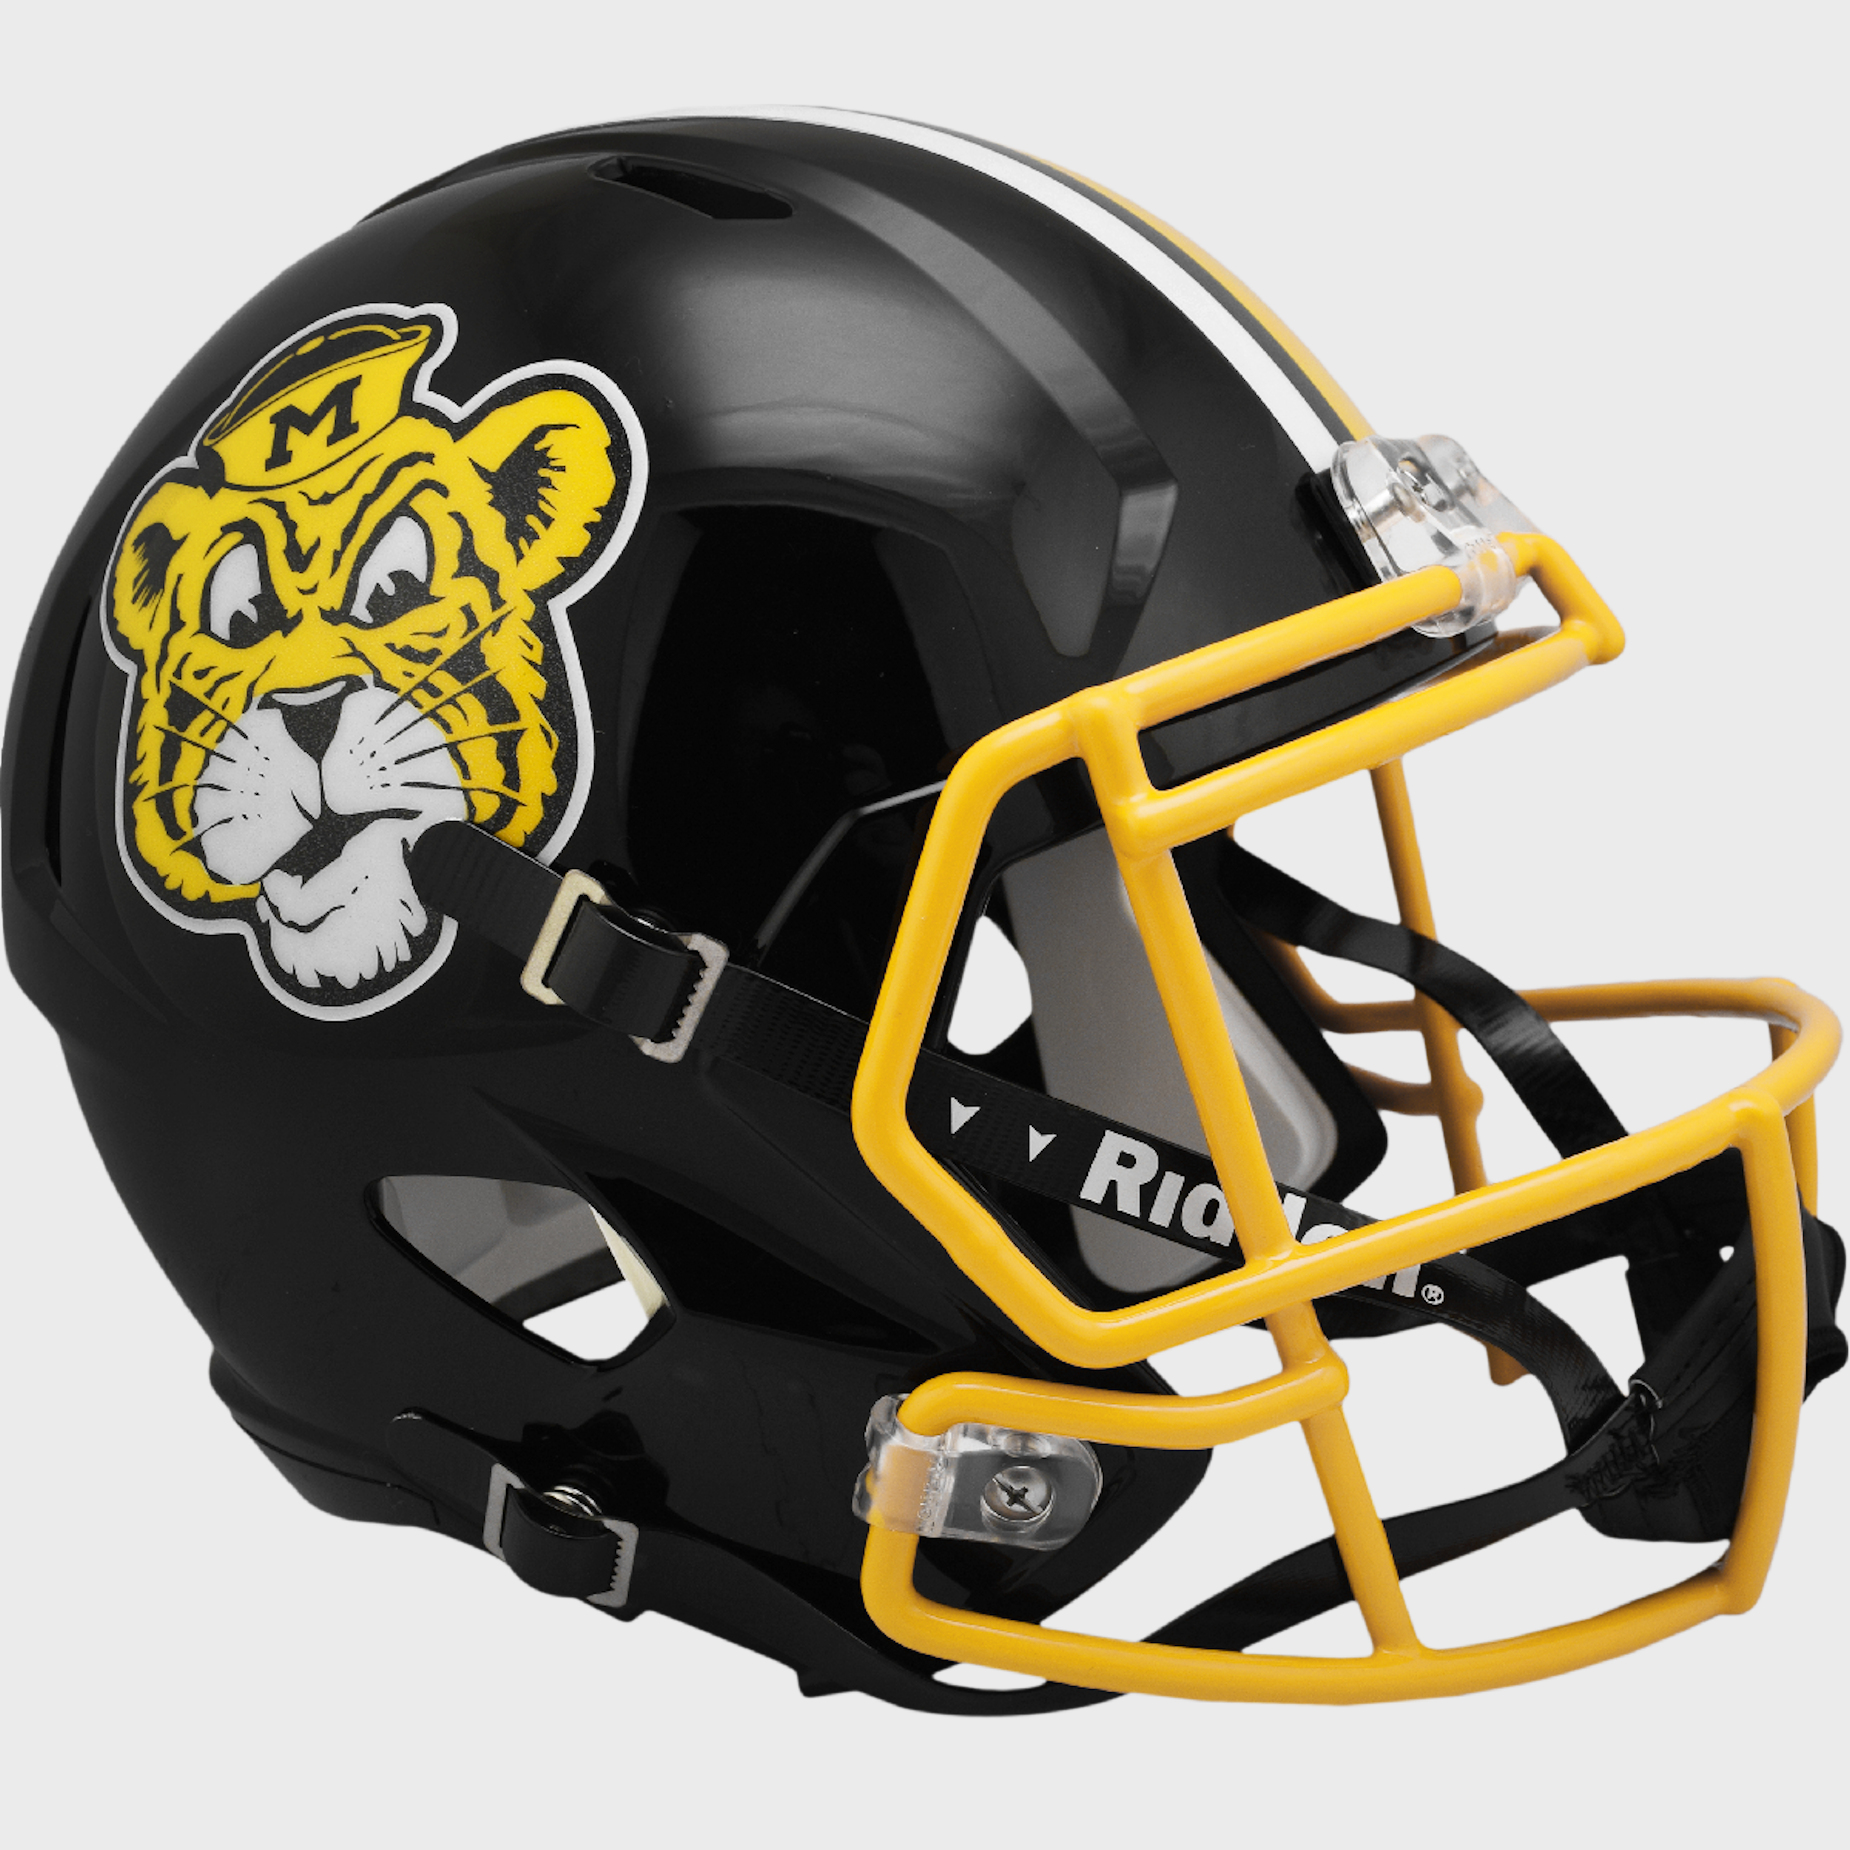 Missouri Tigers full size replica helmet